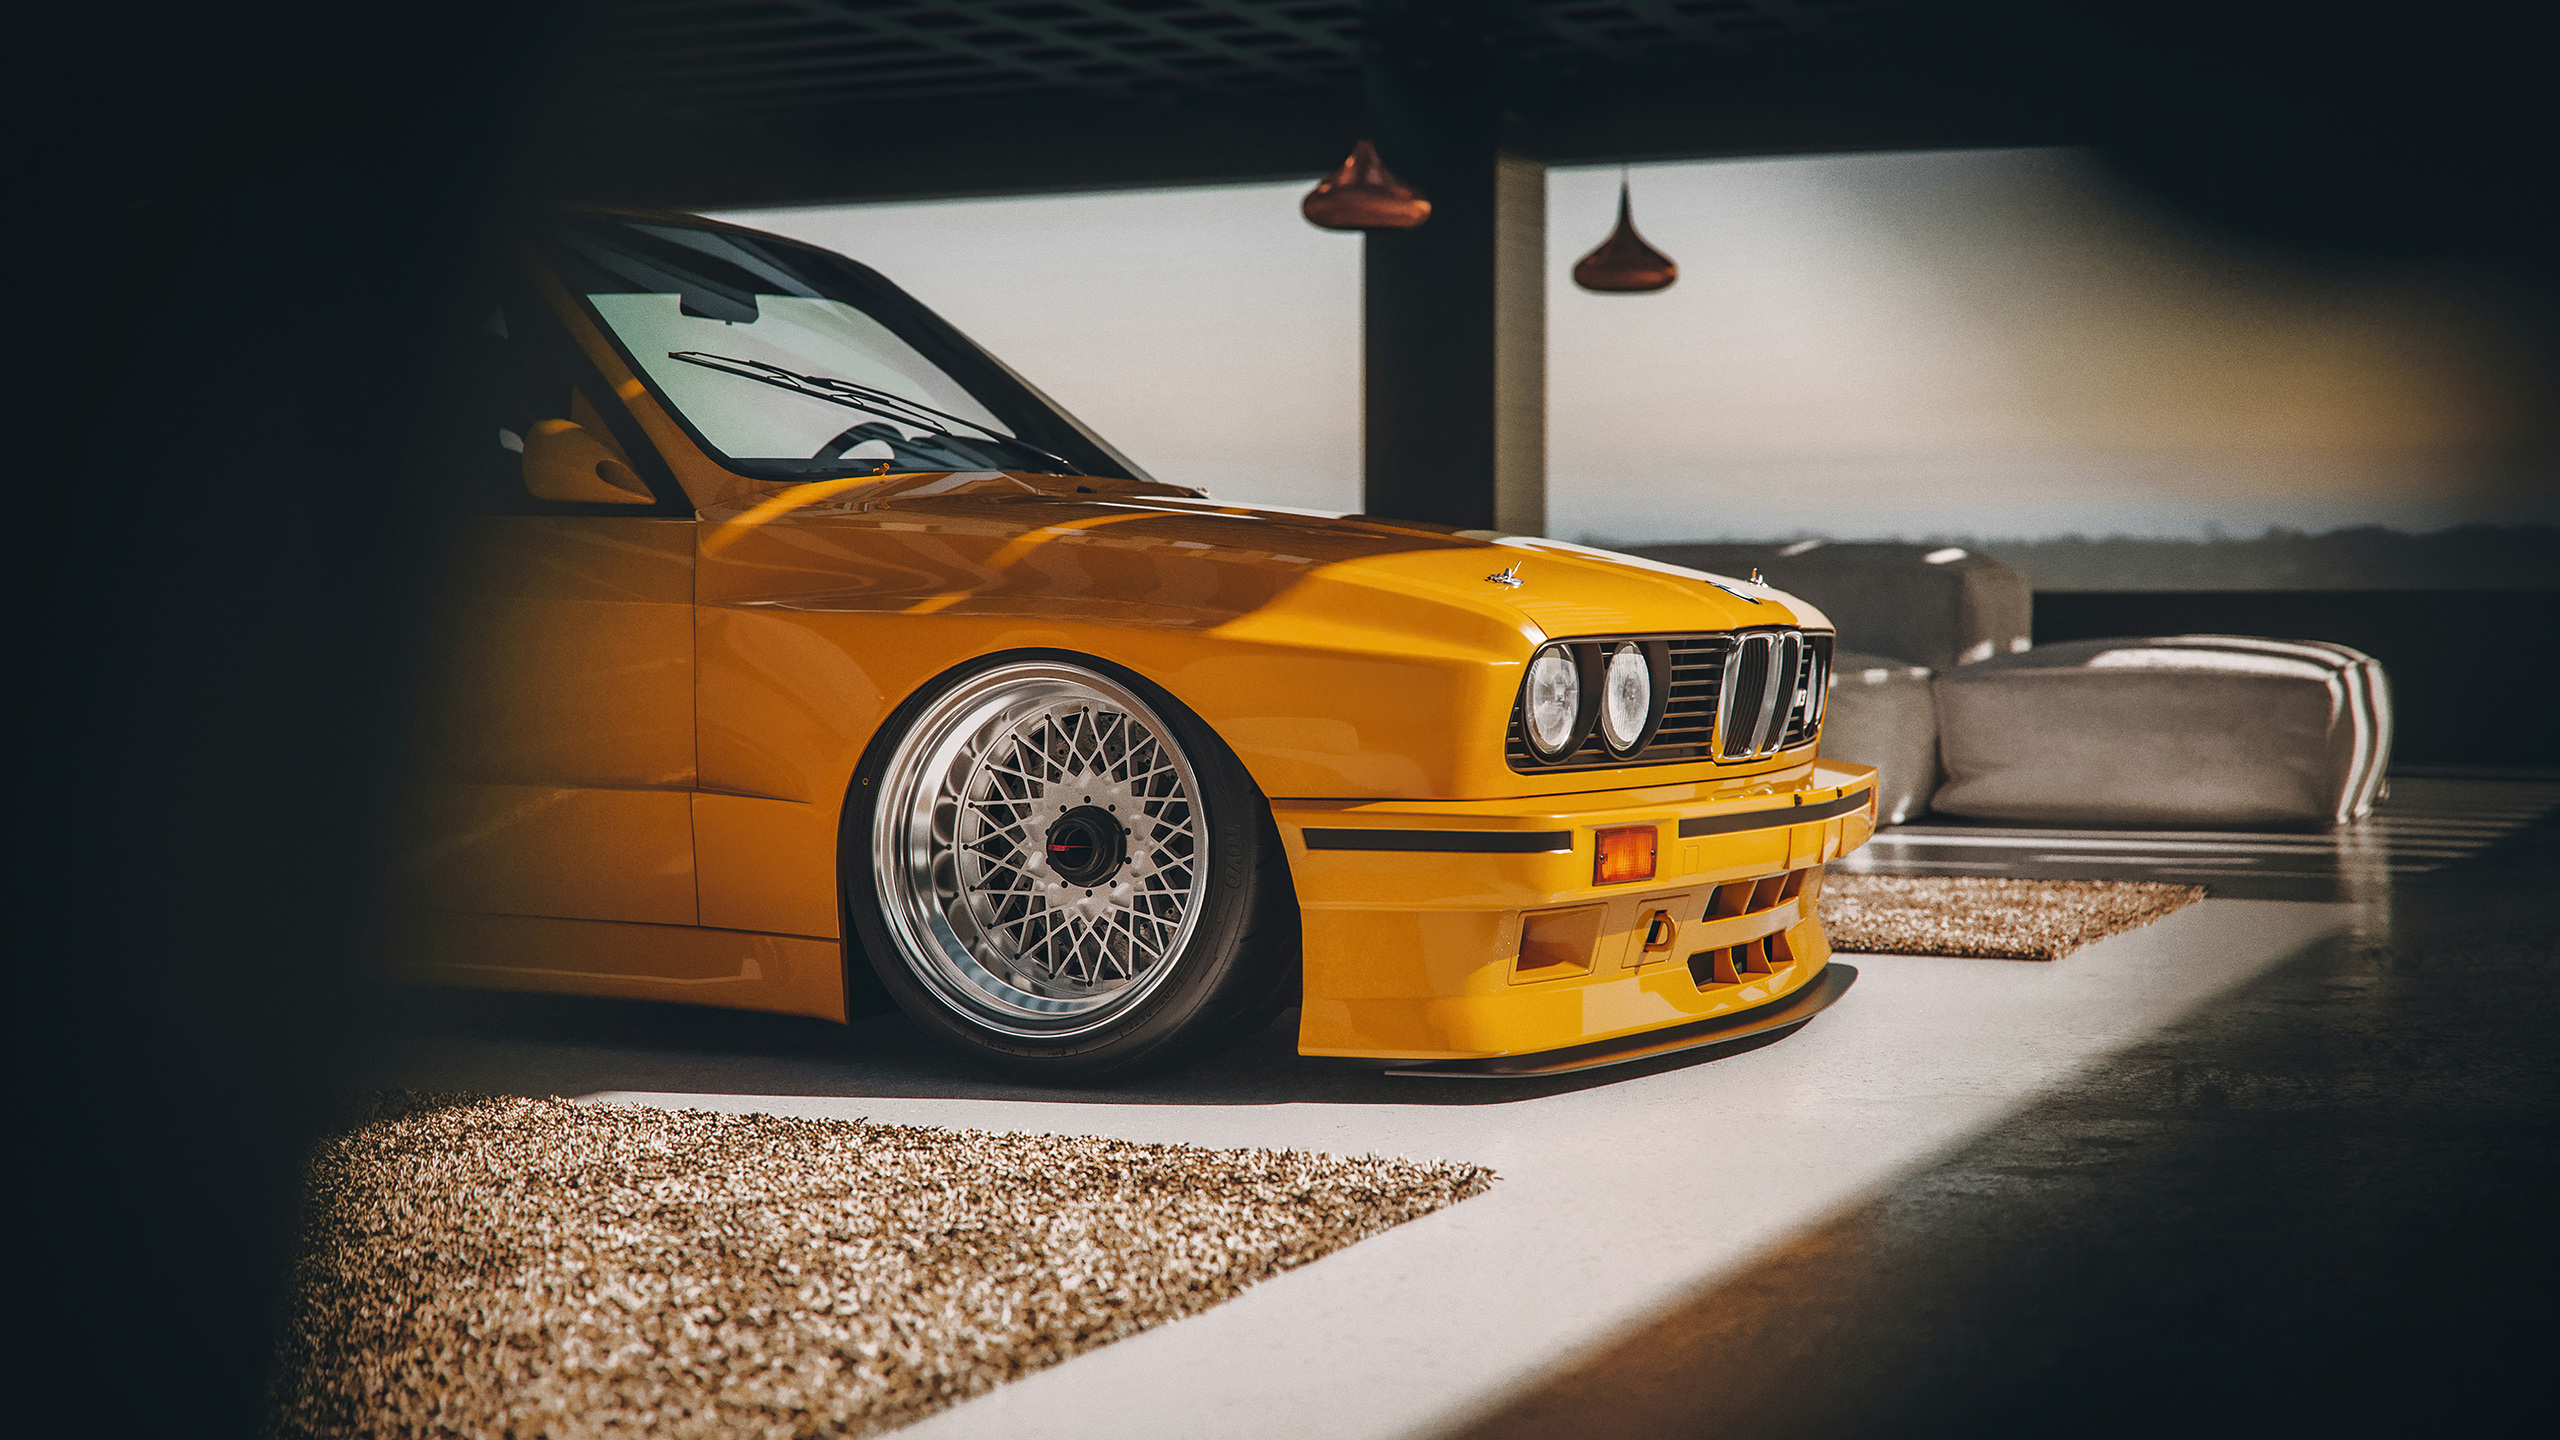 BMW E30 M3 - một biểu tượng của ô tô thể thao, được yêu thích vì sự mạnh mẽ và khí động học của nó. Hãy xem ngay hình ảnh liên quan để thấy rõ sự đẳng cấp và tinh thế của chiếc xe này.